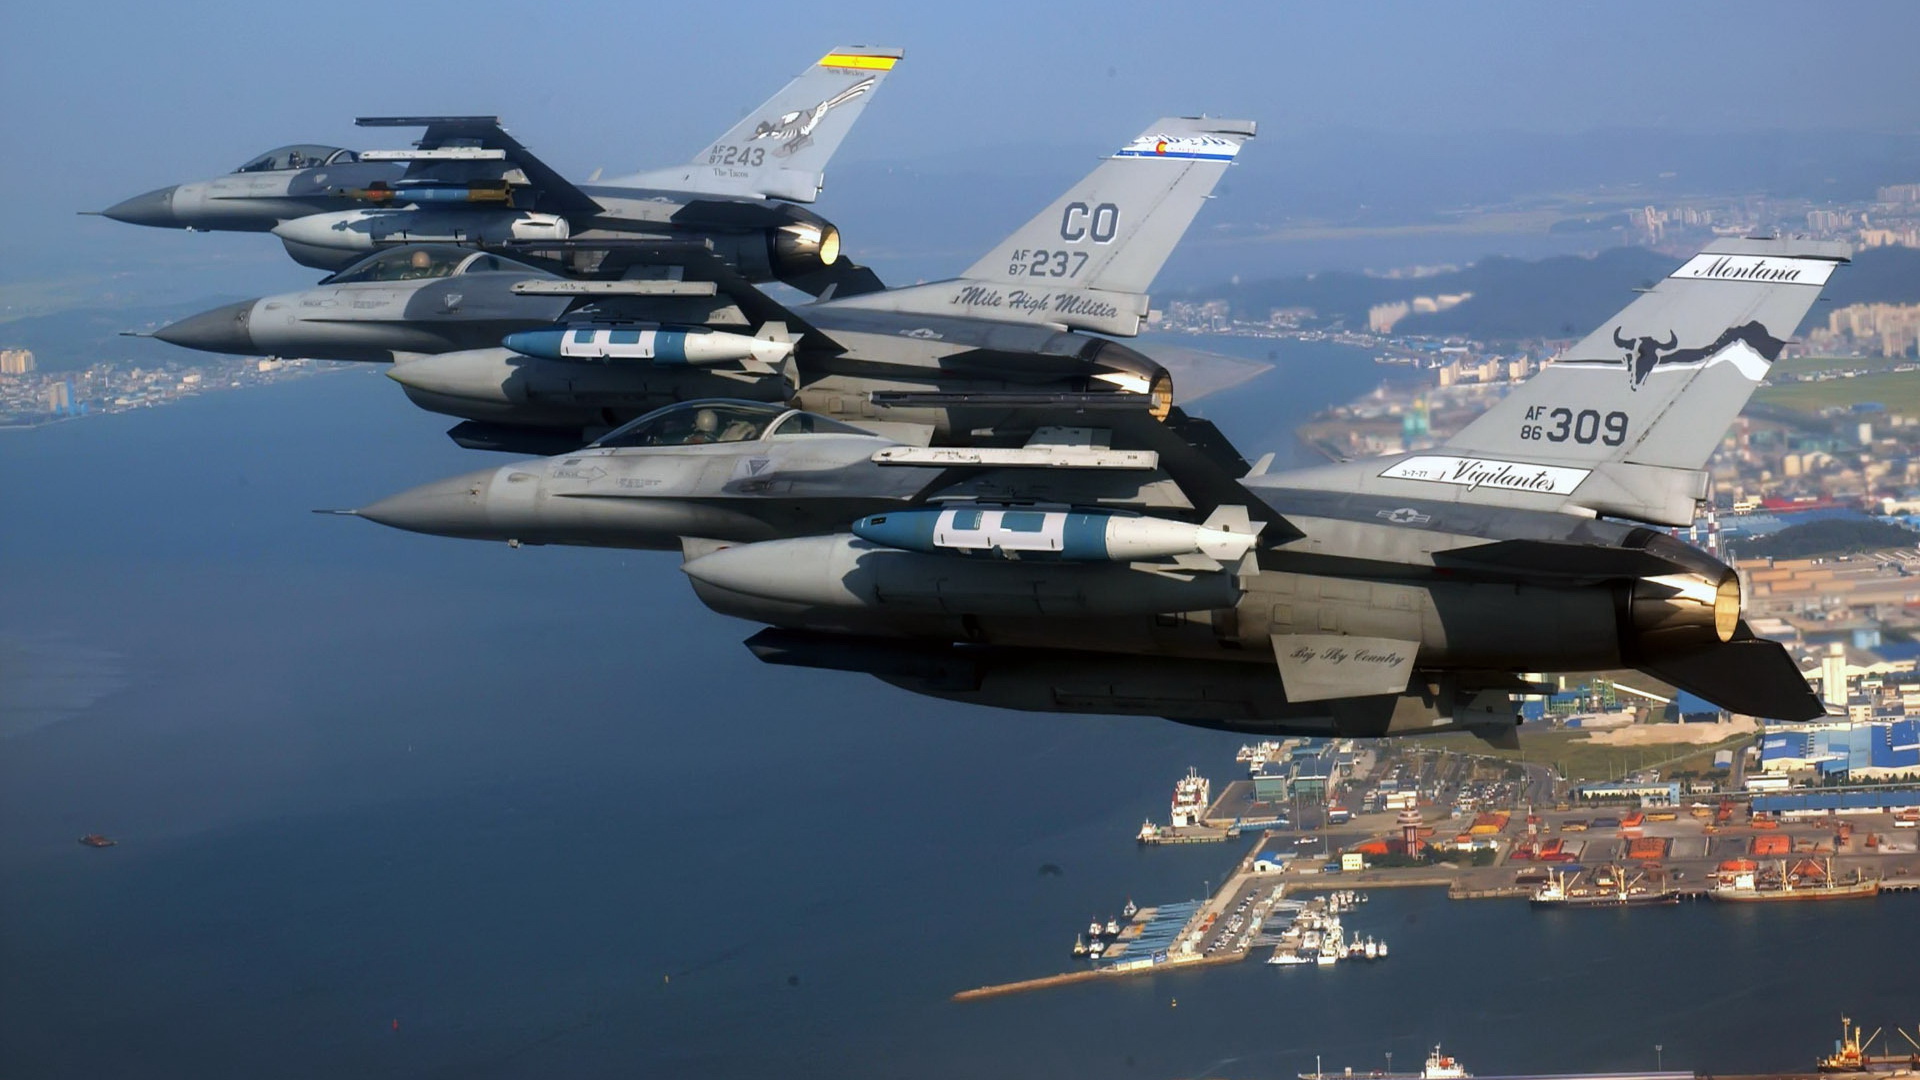 Скачать обои бесплатно General Dynamics F 16 Файтинг Фэлкон, Военные, Реактивные Истребители картинка на рабочий стол ПК